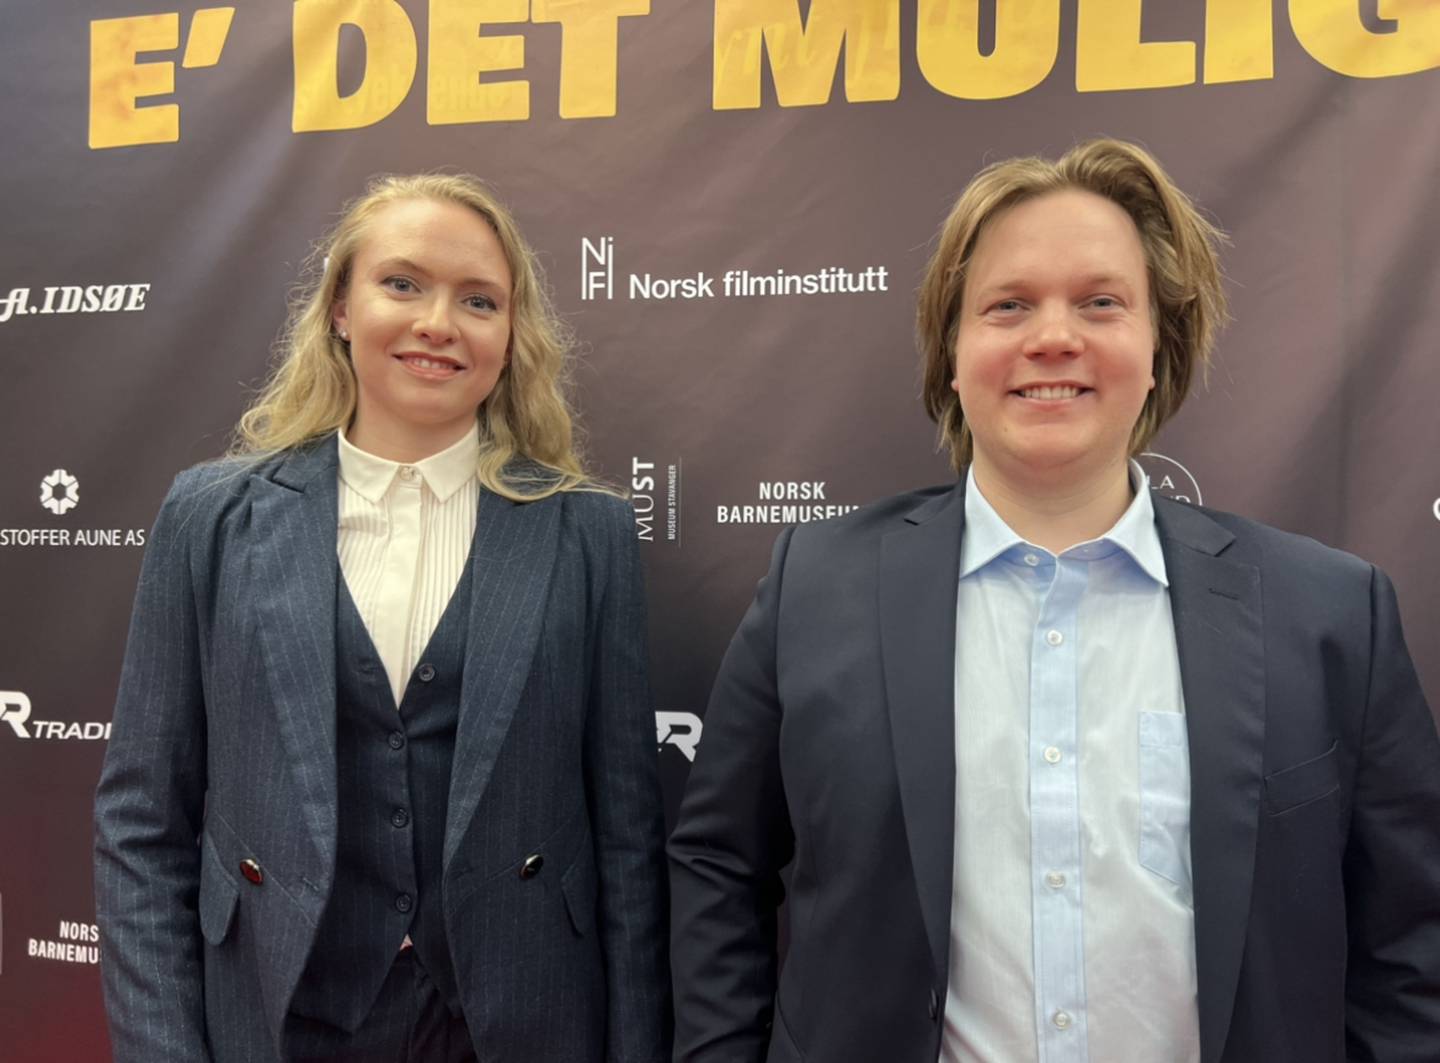 Regissør og produsent Maria Lavelle og regissør Johannes Vikse Pedersen er fornøyde etter premieren på filmen "E det muligt"